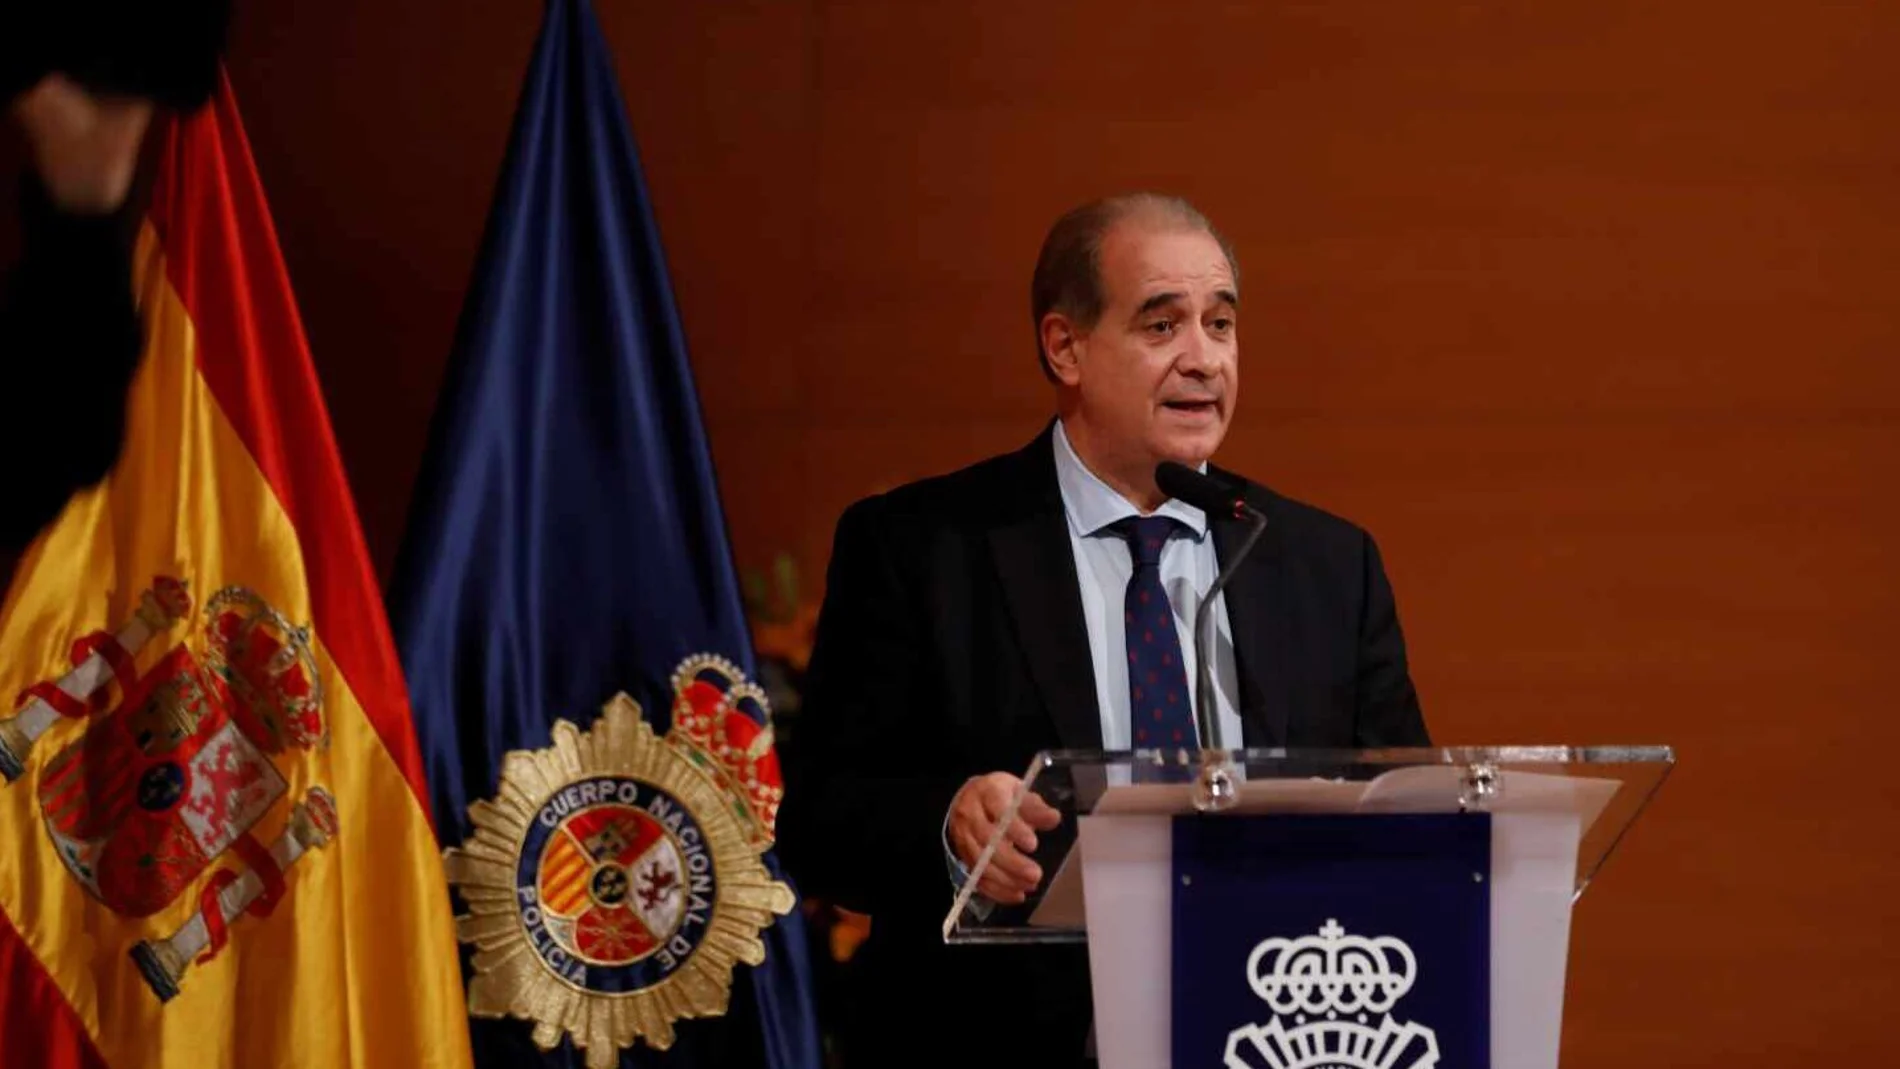 Francisco Pardo Piqueras, director general de la Policía Nacional, en un acto oficial